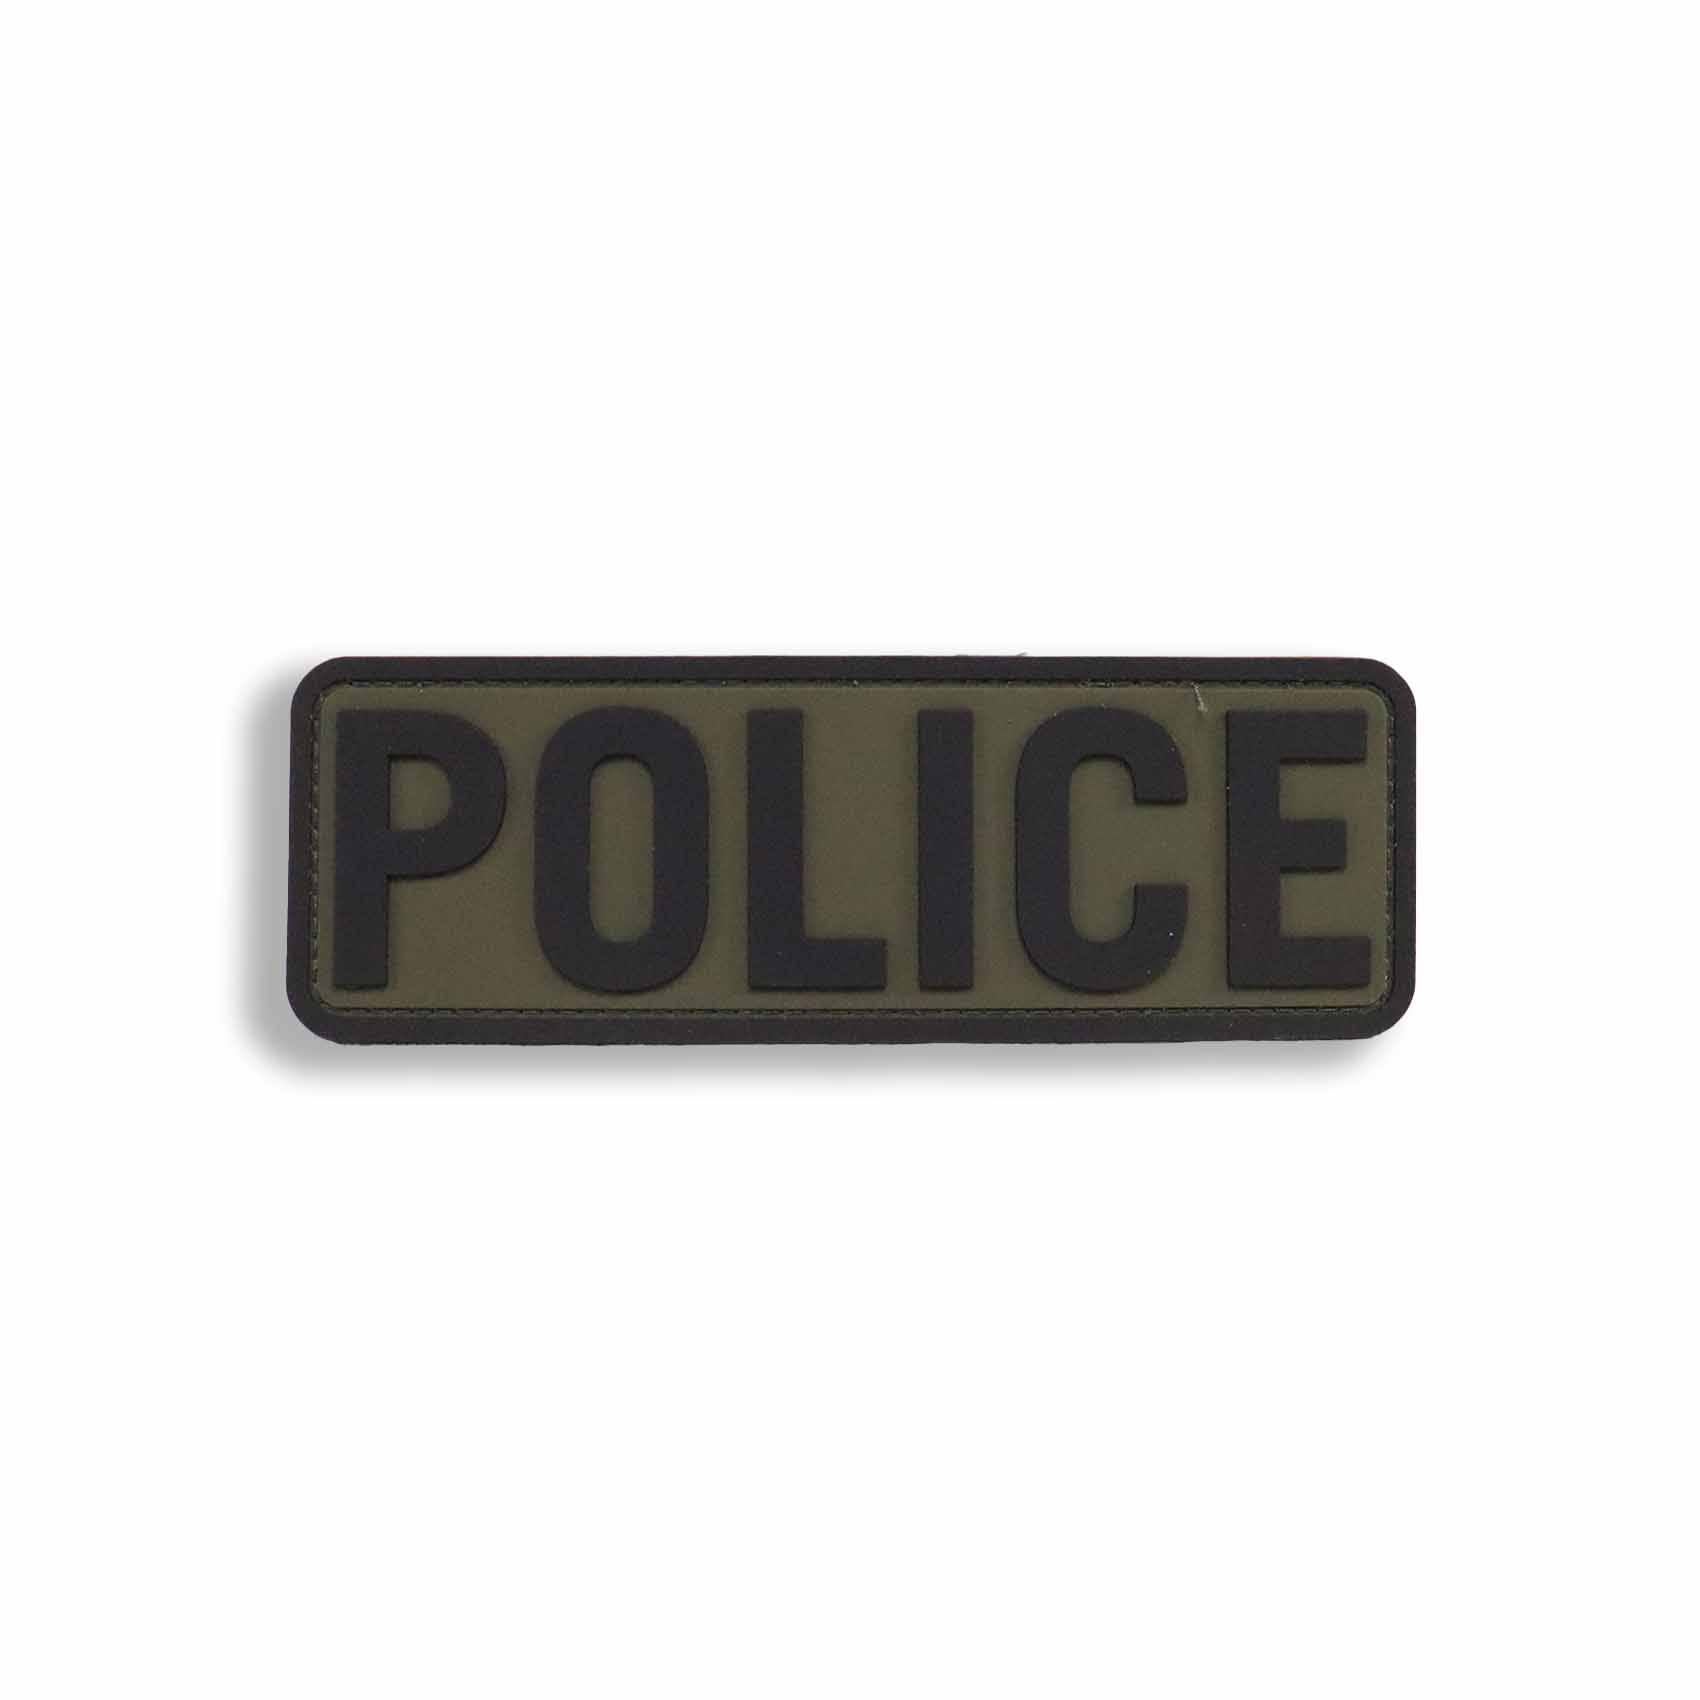 PVC Sheriff ID Patch - 6x2